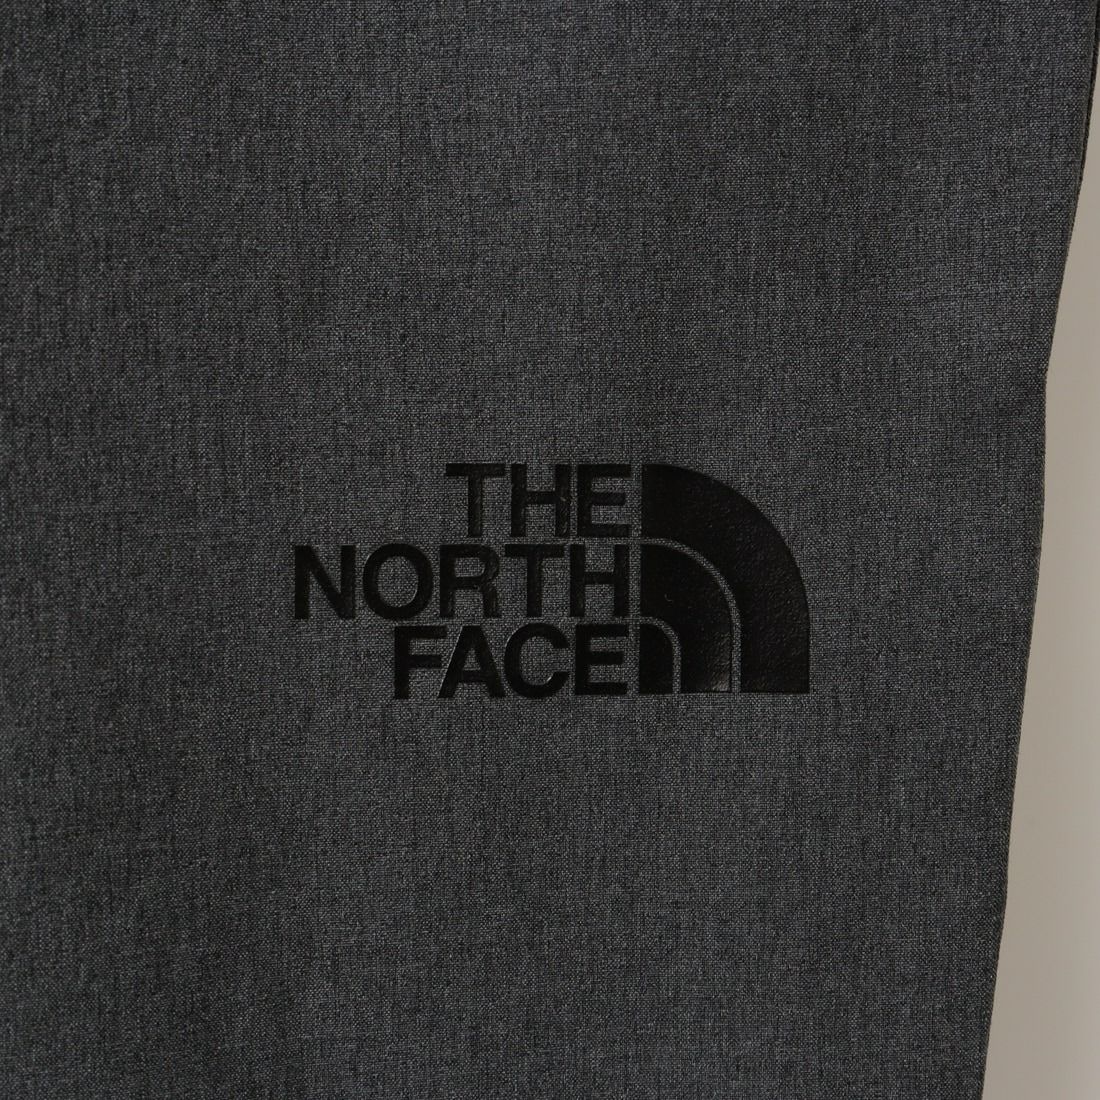 THE NORTH FACE [ザ ノースフェイス] フレキシブルアンクルパンツ [NBW42388] ZC